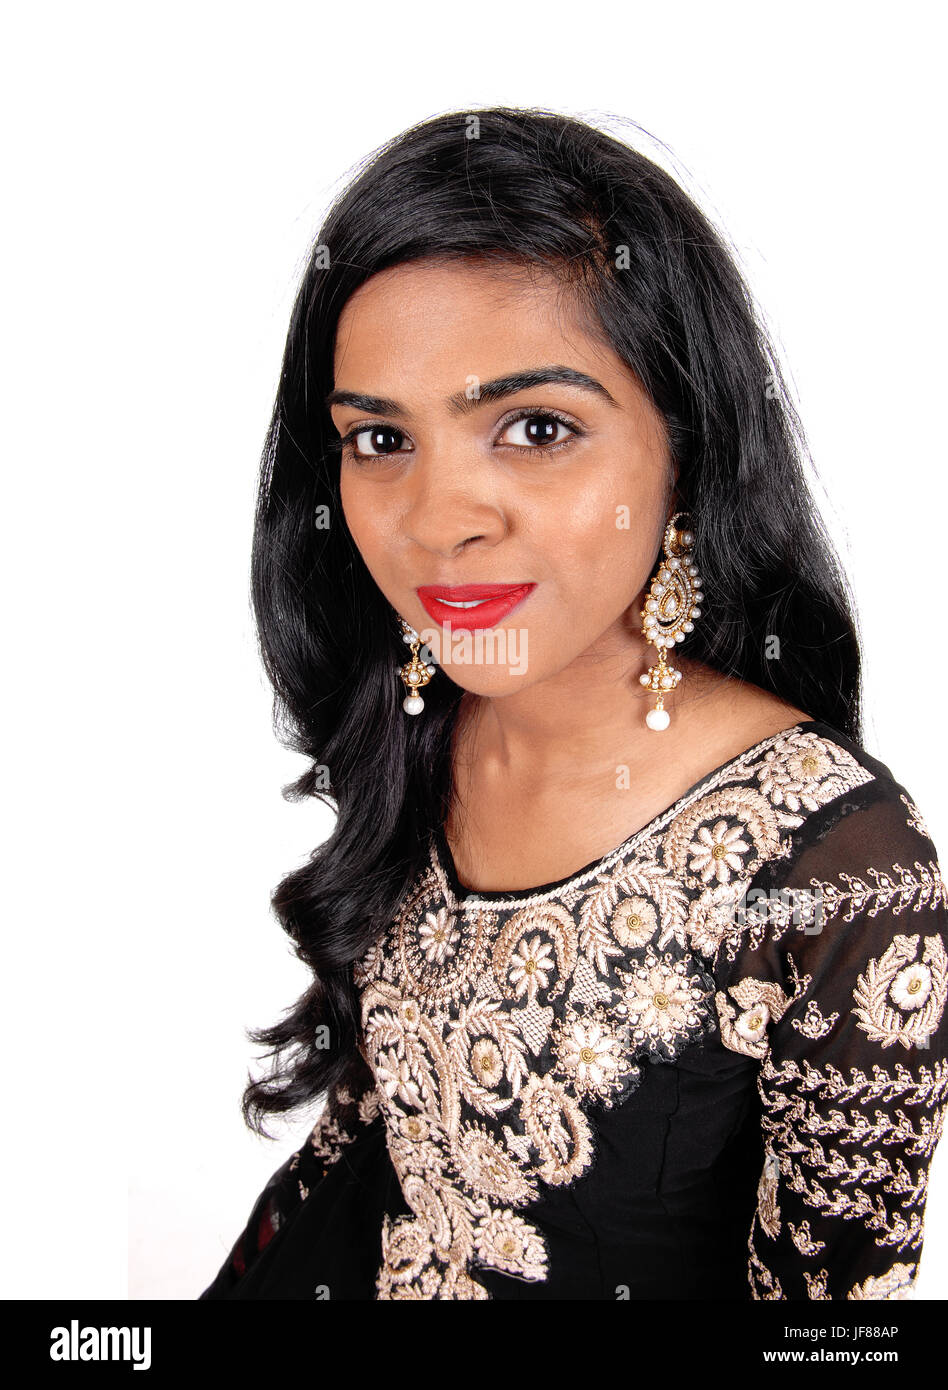 Portrait de femme de l'Est de l'Inde. Banque D'Images